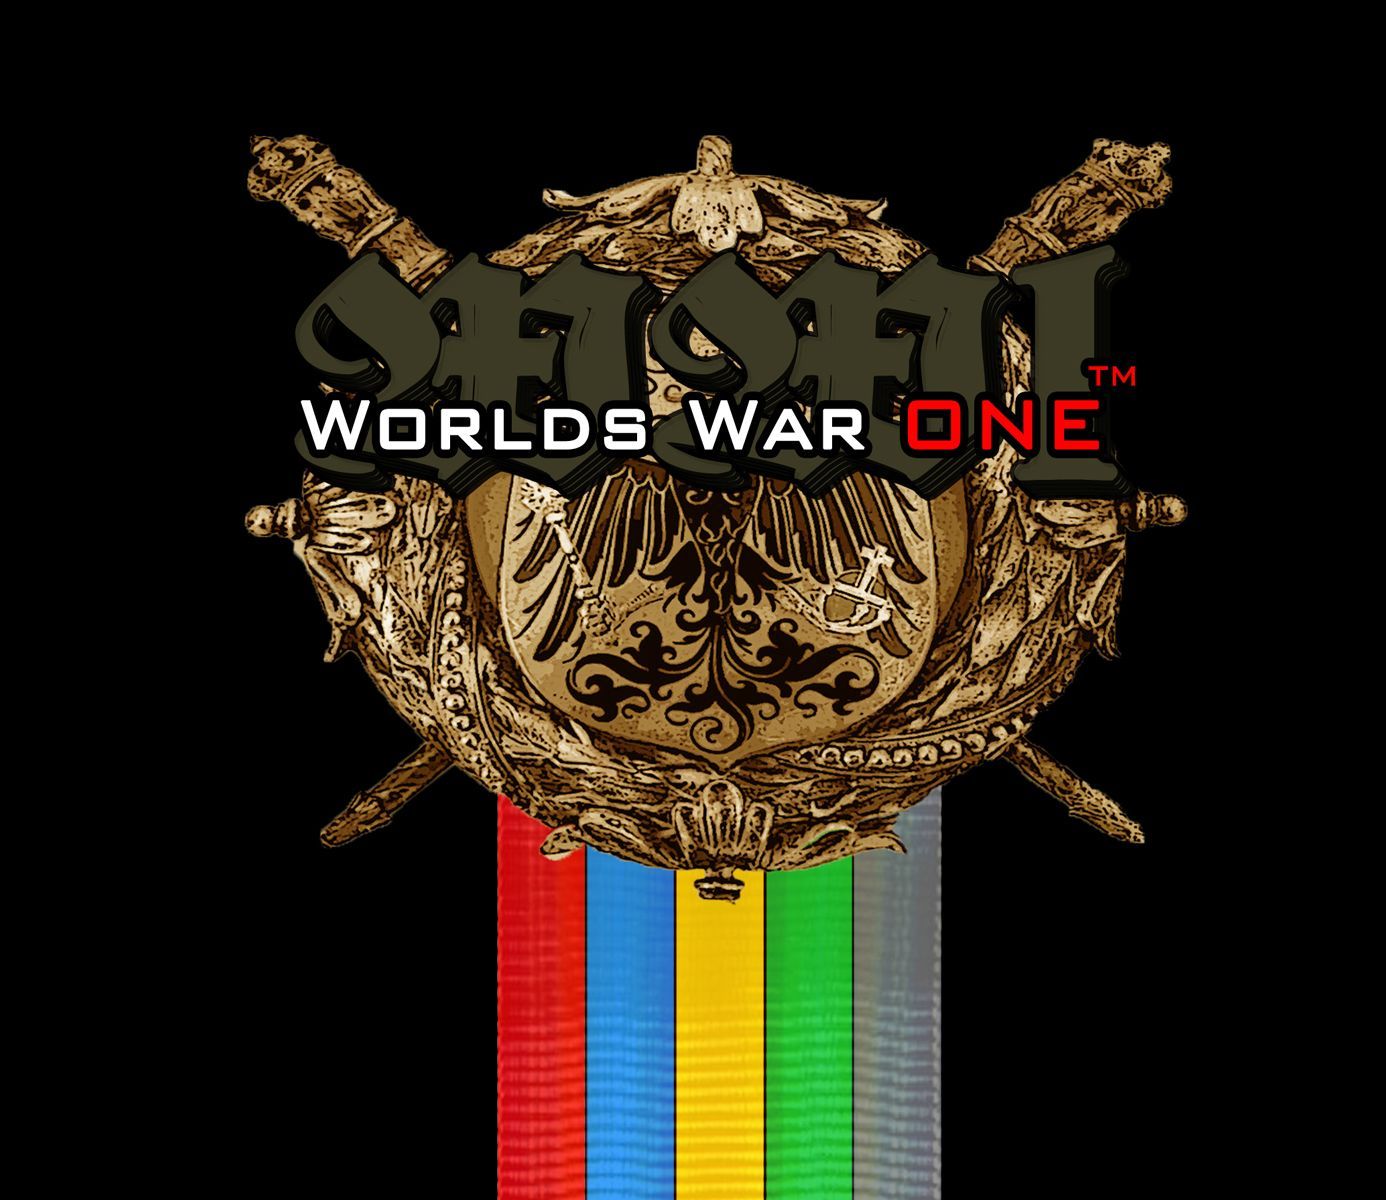 Worlds War One